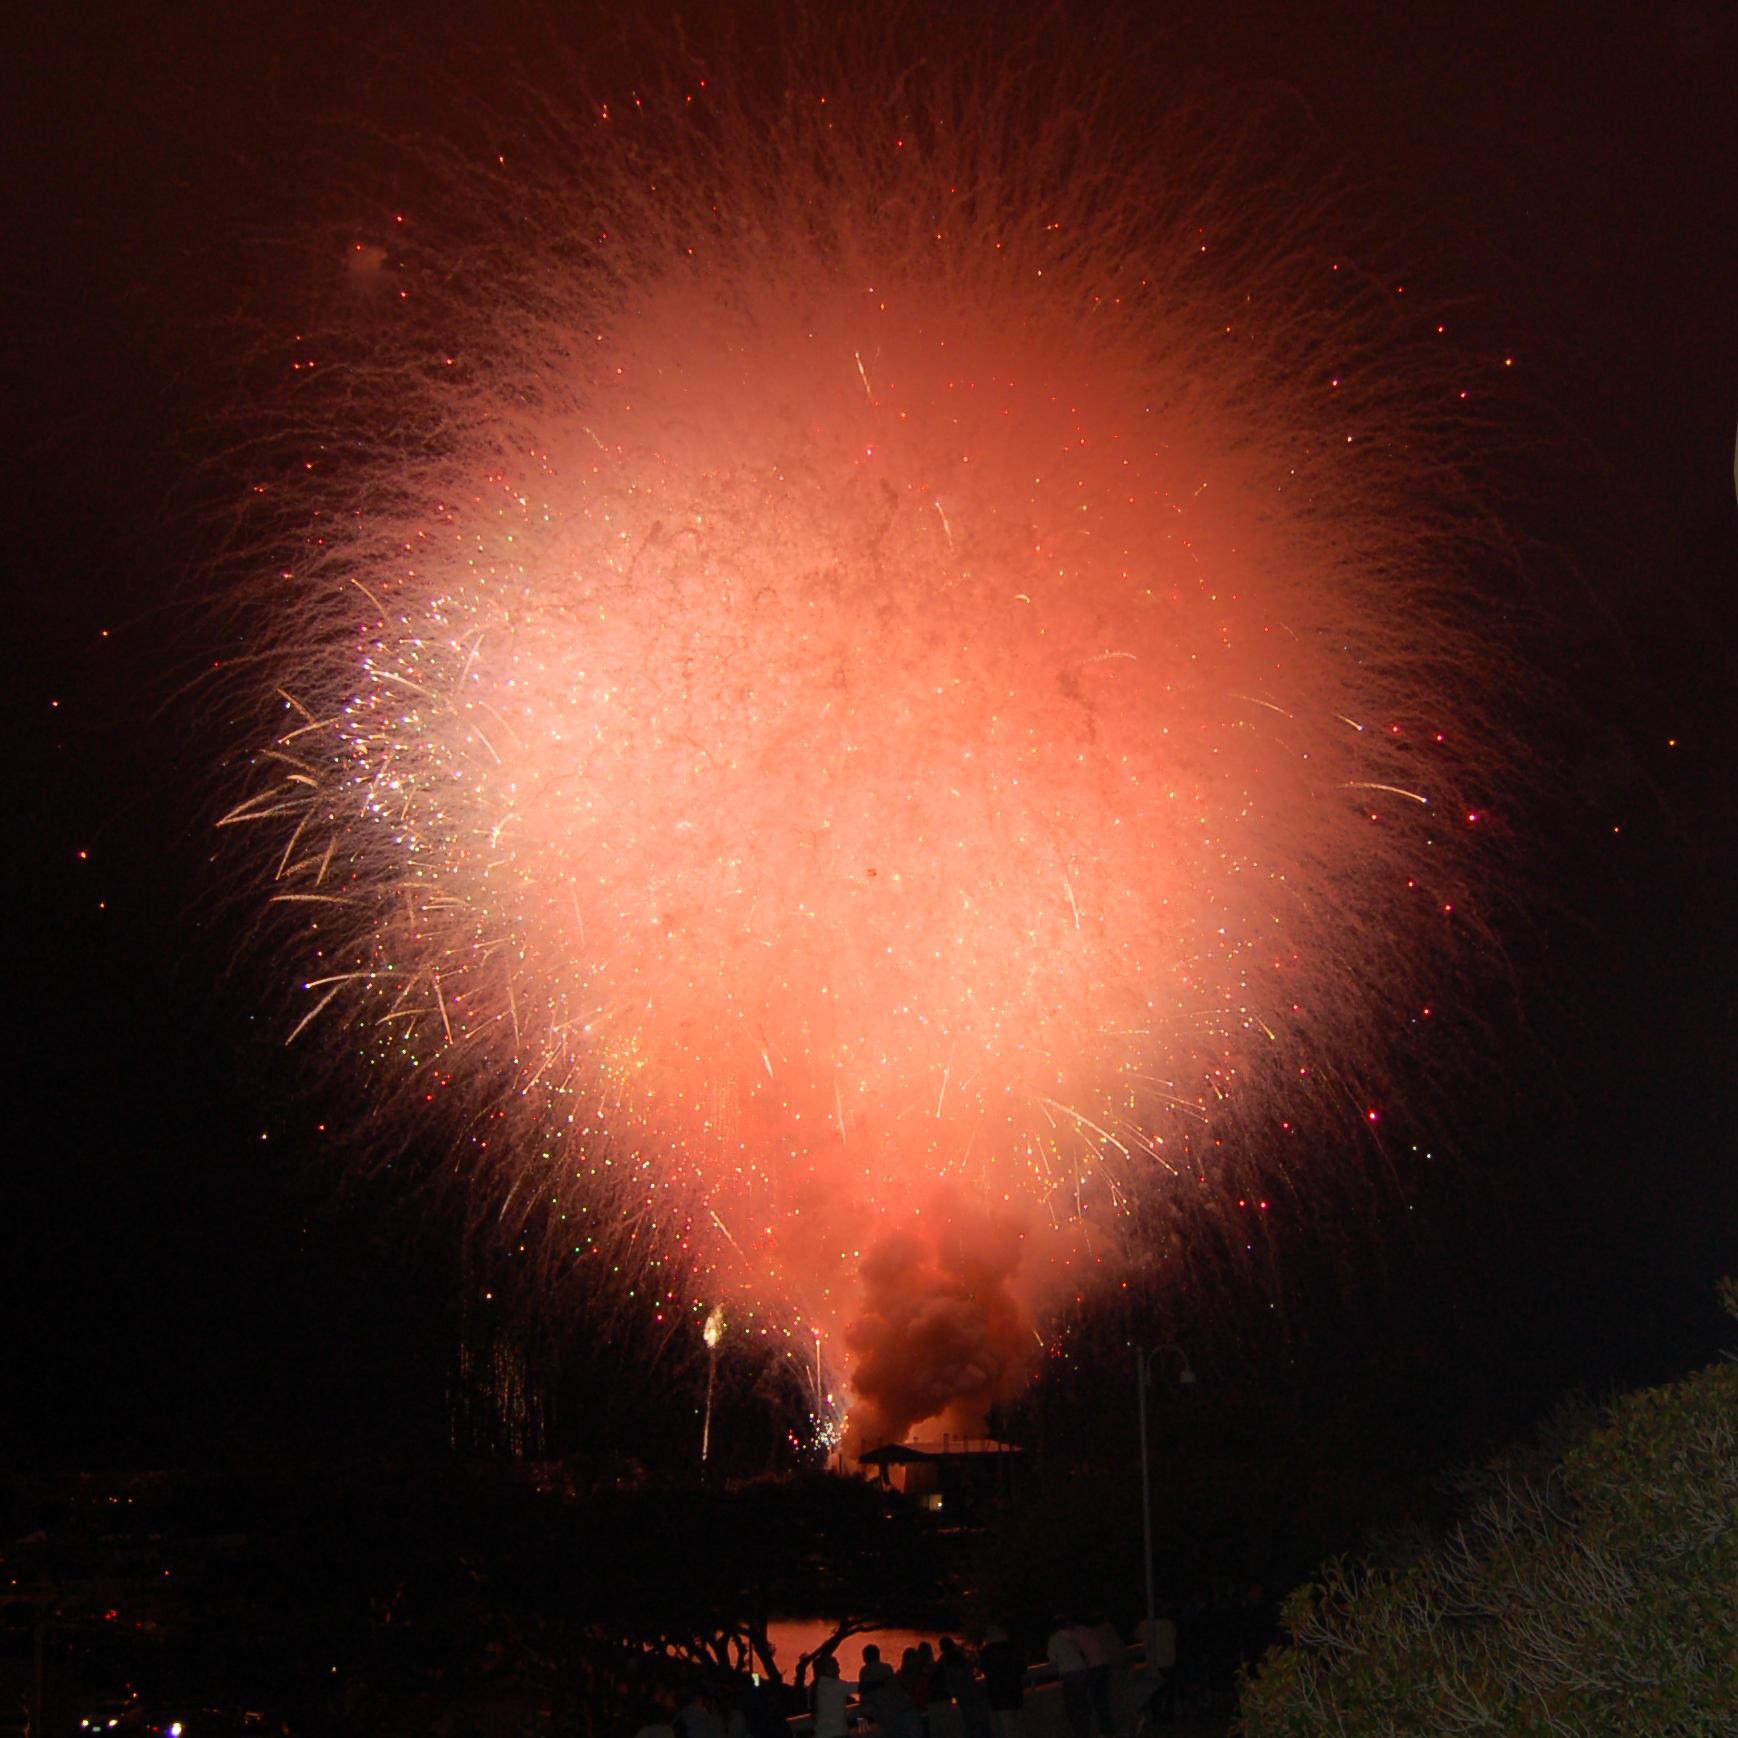 san diego fireworks 2012